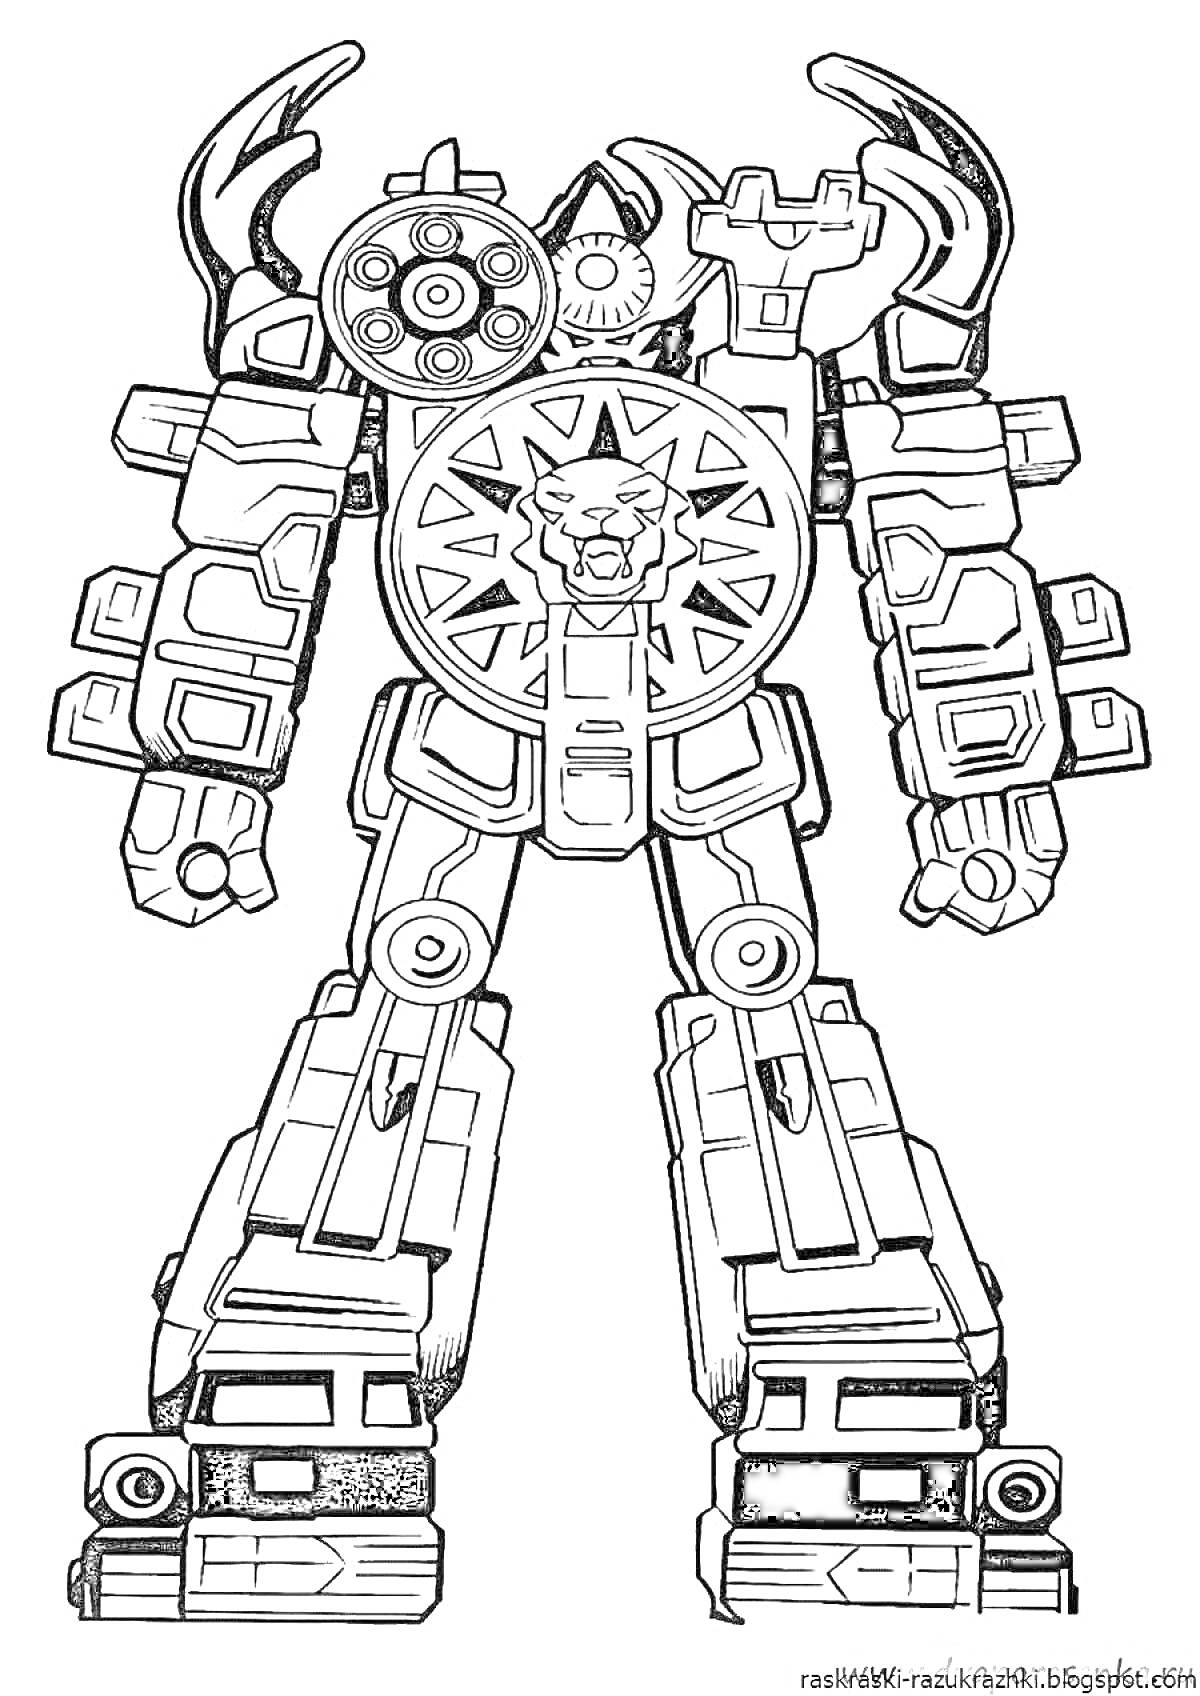 Раскраска Робот с круговым эмблемой льва на груди и пушками на плечах